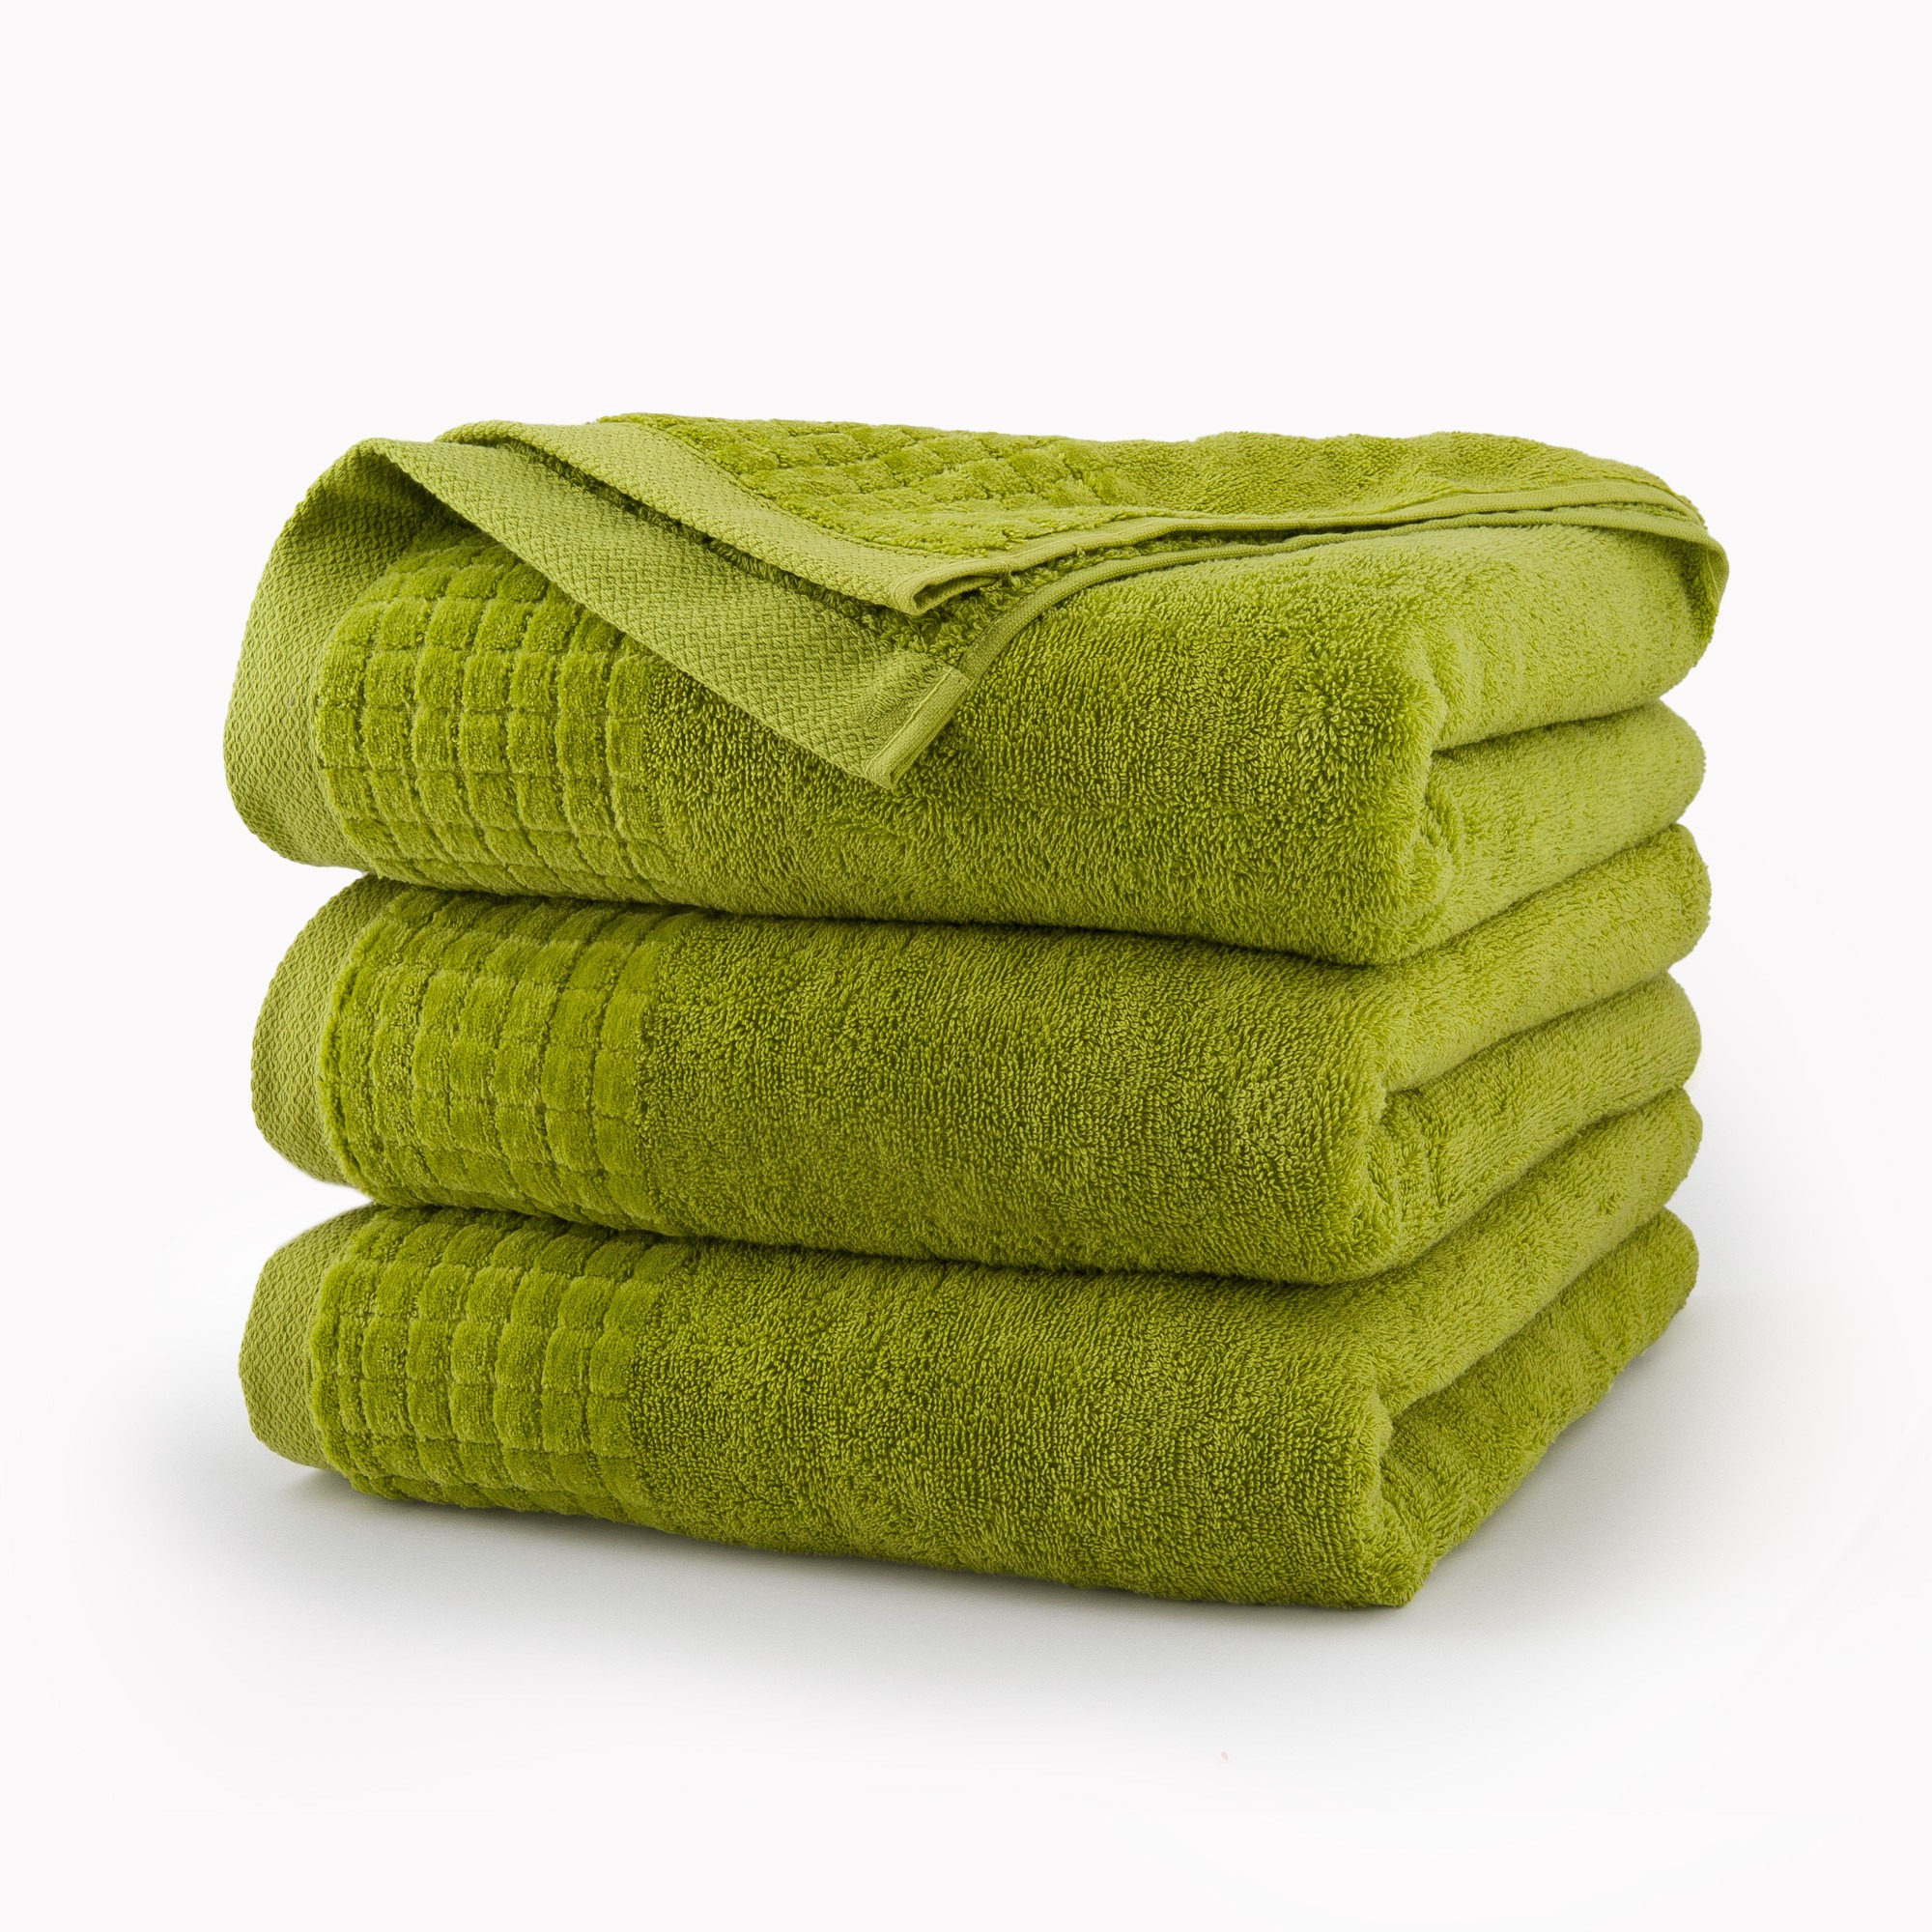 Кран полотенце. Салатовое полотенце. Зеленое полотенце. Полотенце махровое зеленый. Сложенные полотенца.